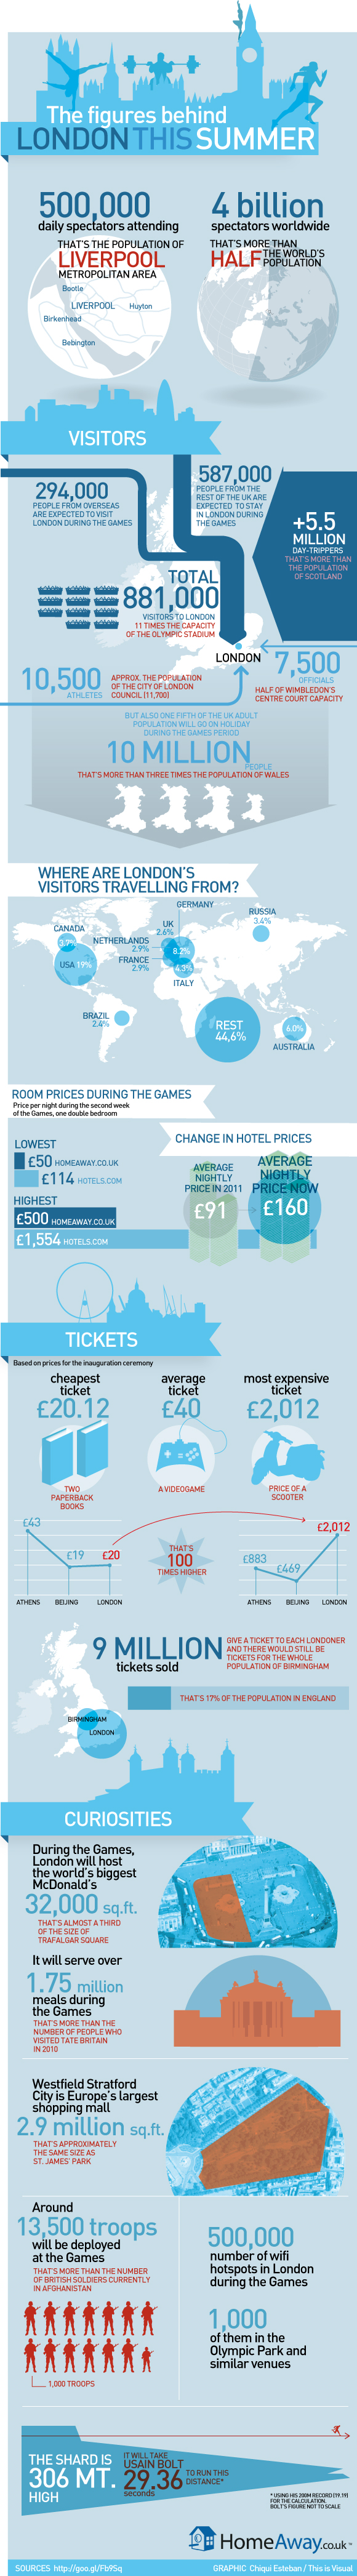 London Tourism Figures